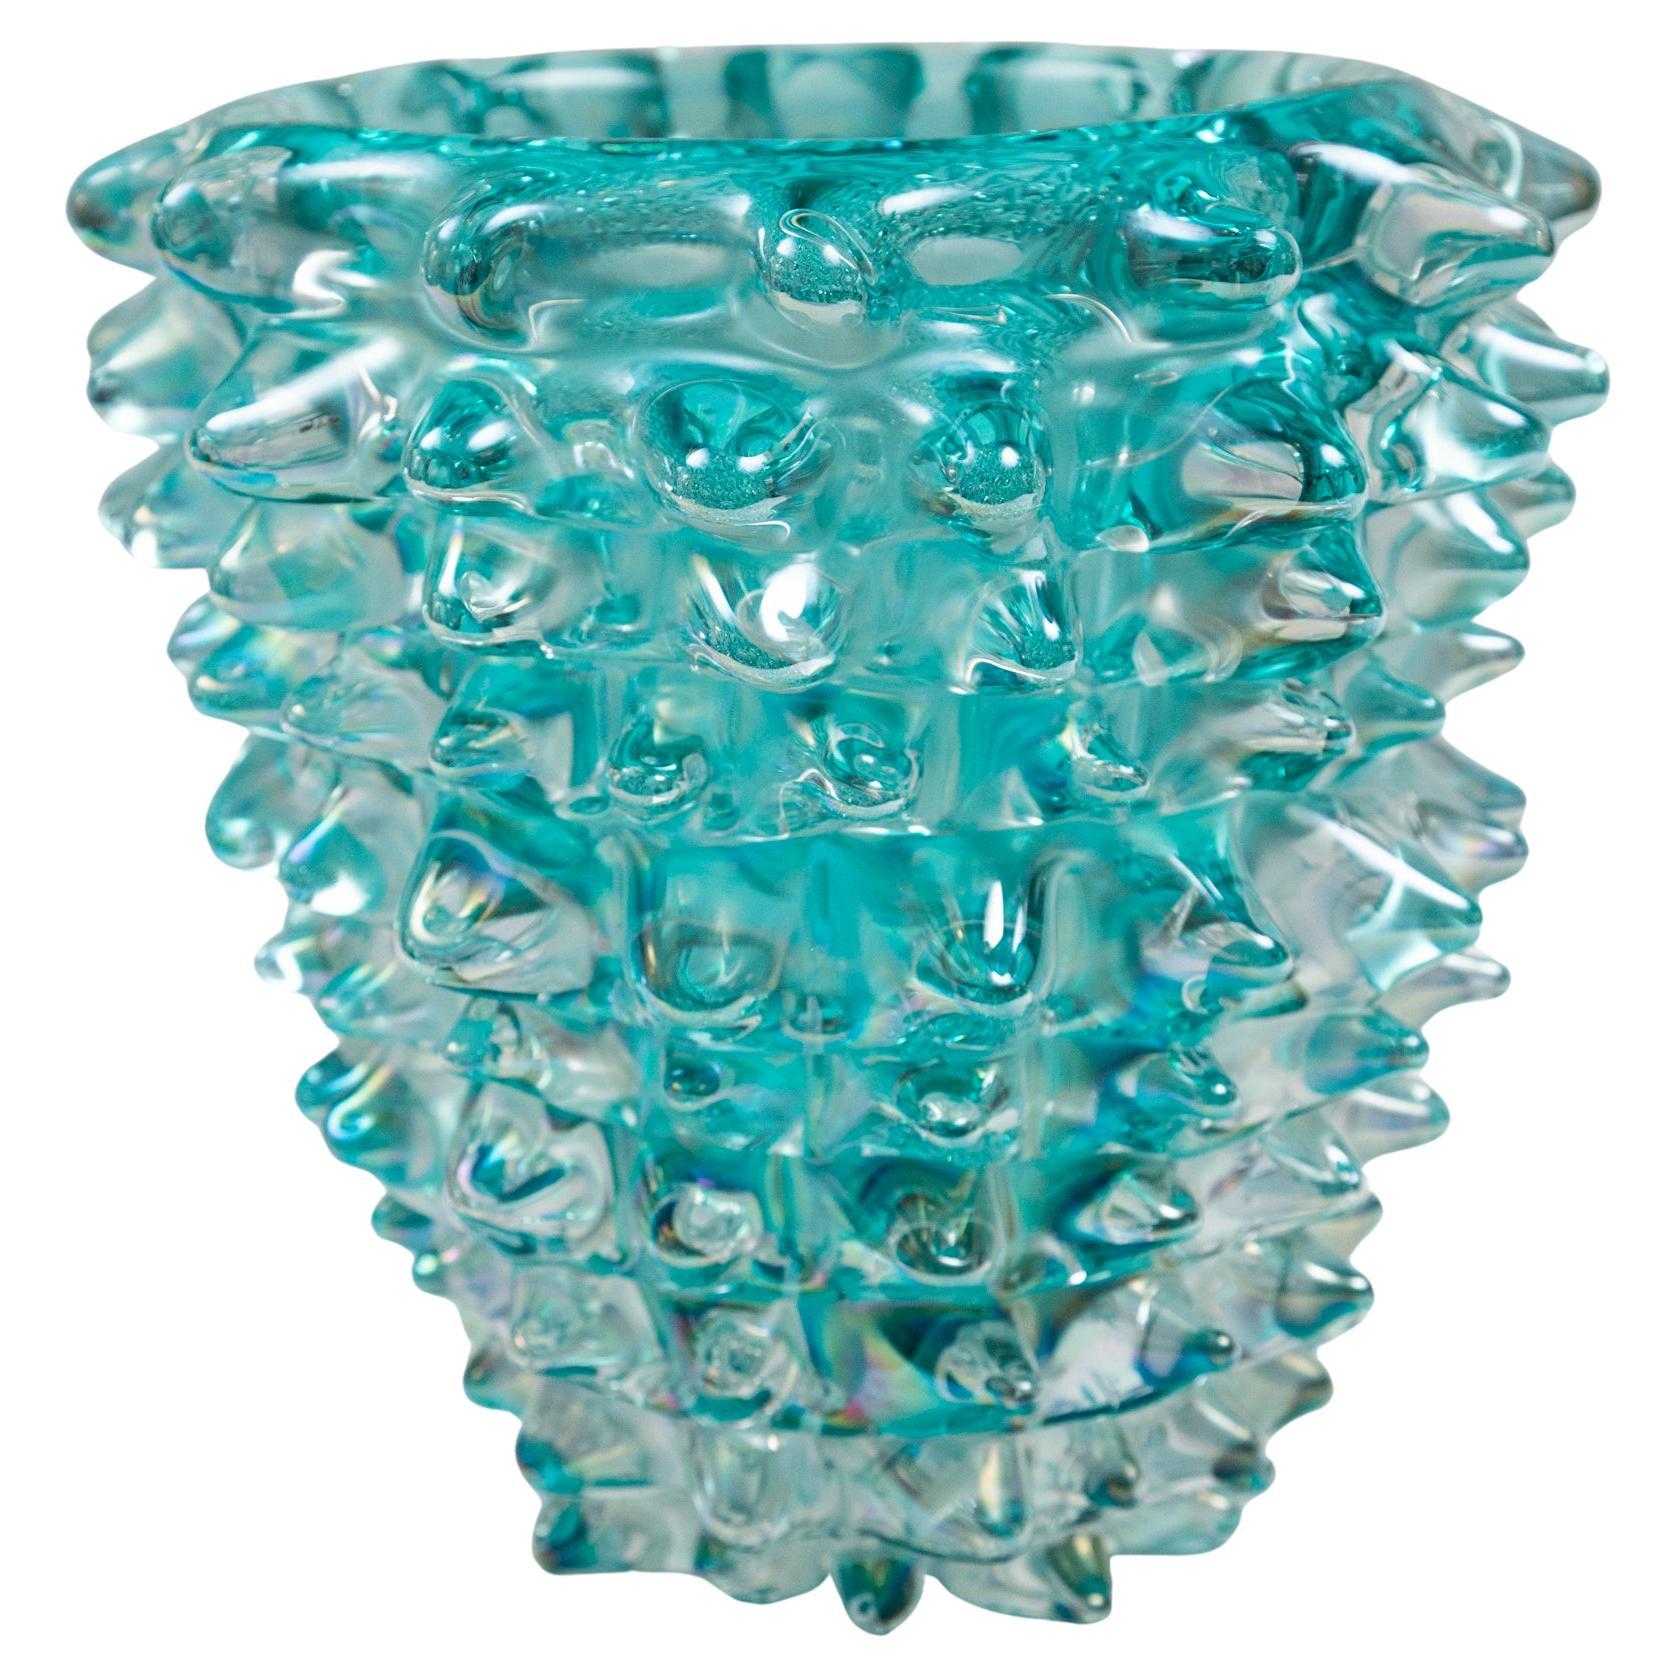 Eine erhabene, mundgeblasene Vase in schillerndem Aquamarin. Das in das Glas geblasene Schillern verleiht dieser schönen Farbe eine zusätzliche Dimension, einen Effekt der Bewegung, wenn sich das Licht um sie herum verändert.    Jede Spitze wird von